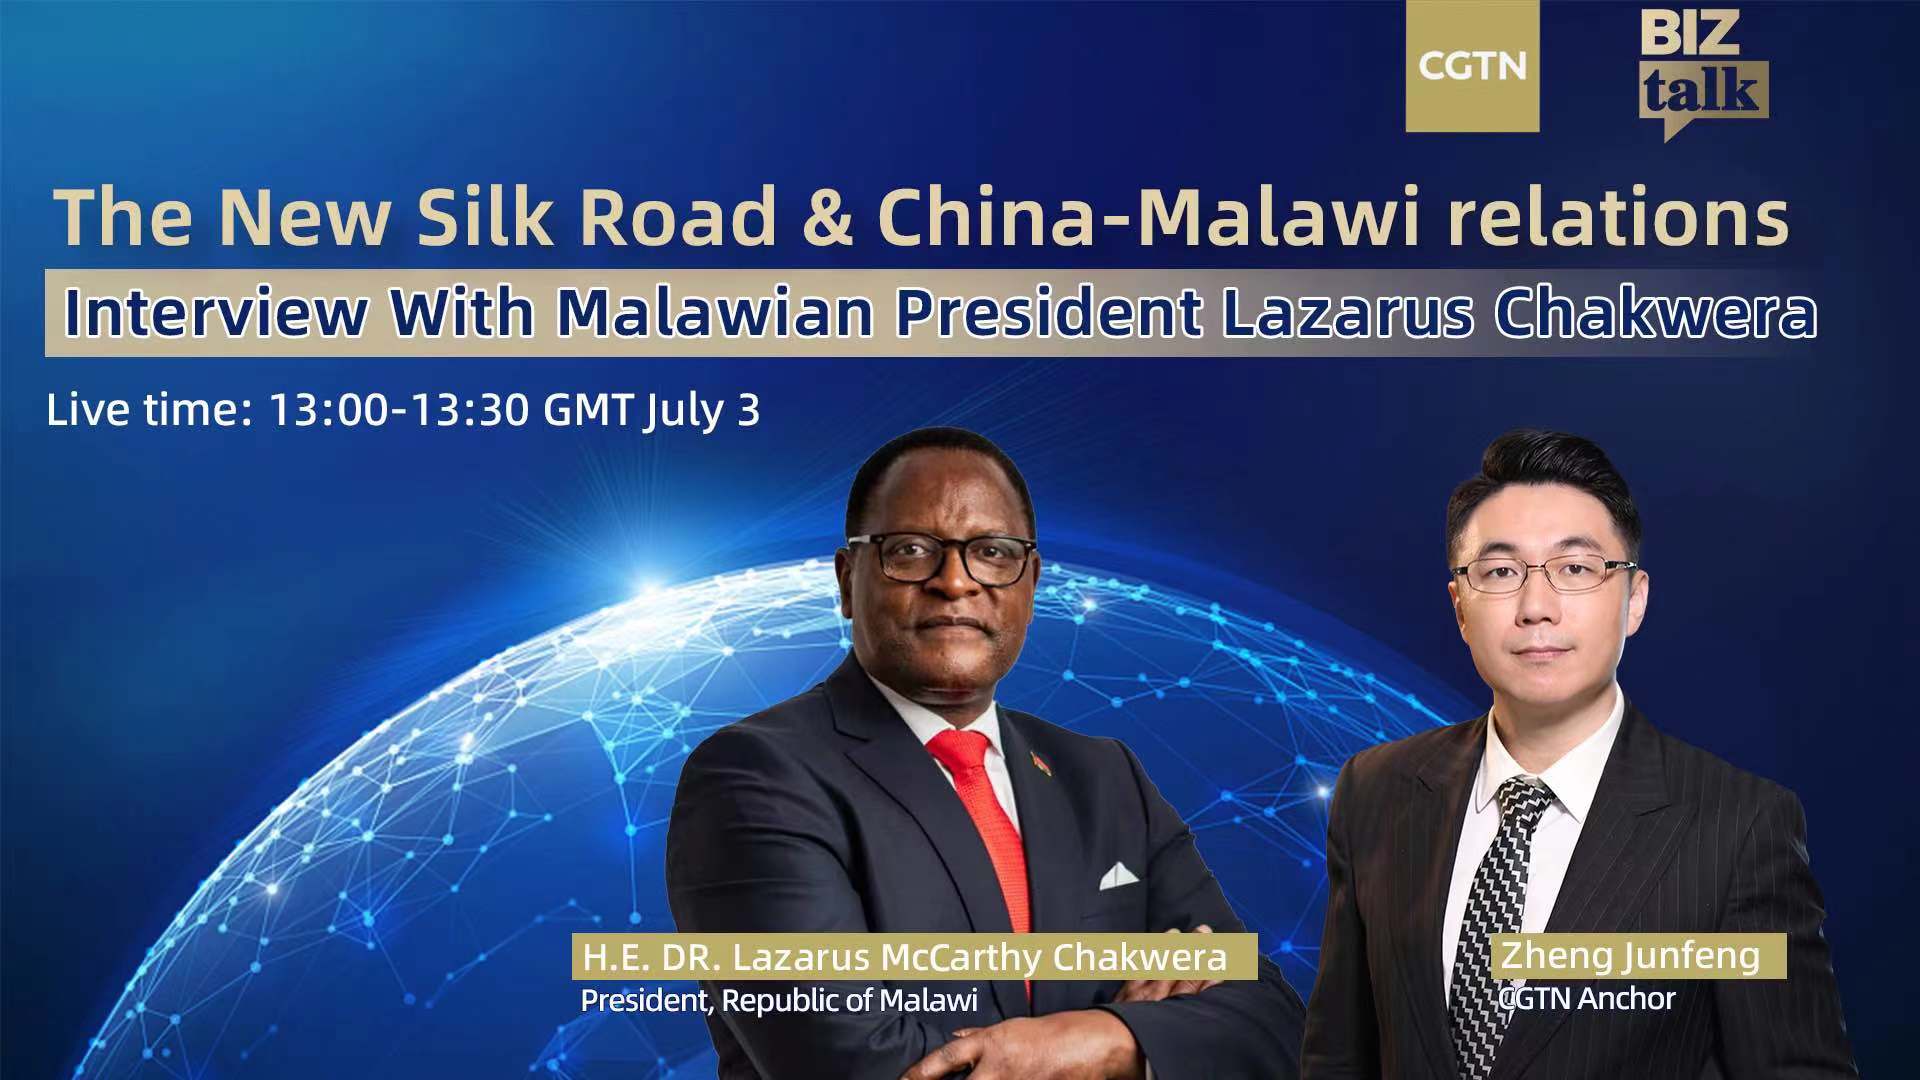 Interview with Malawian President Lazarus Chakwera